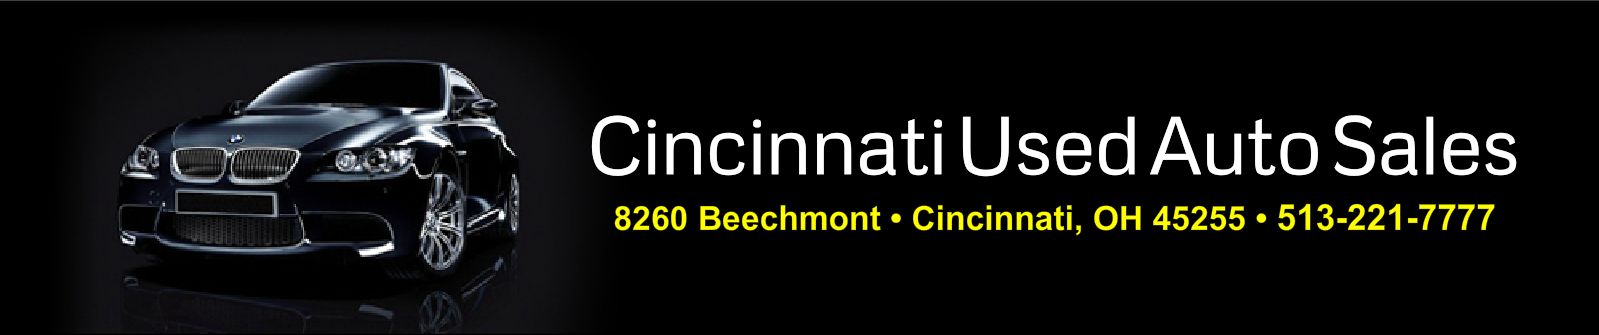 Cincinnati Used Auto Sales